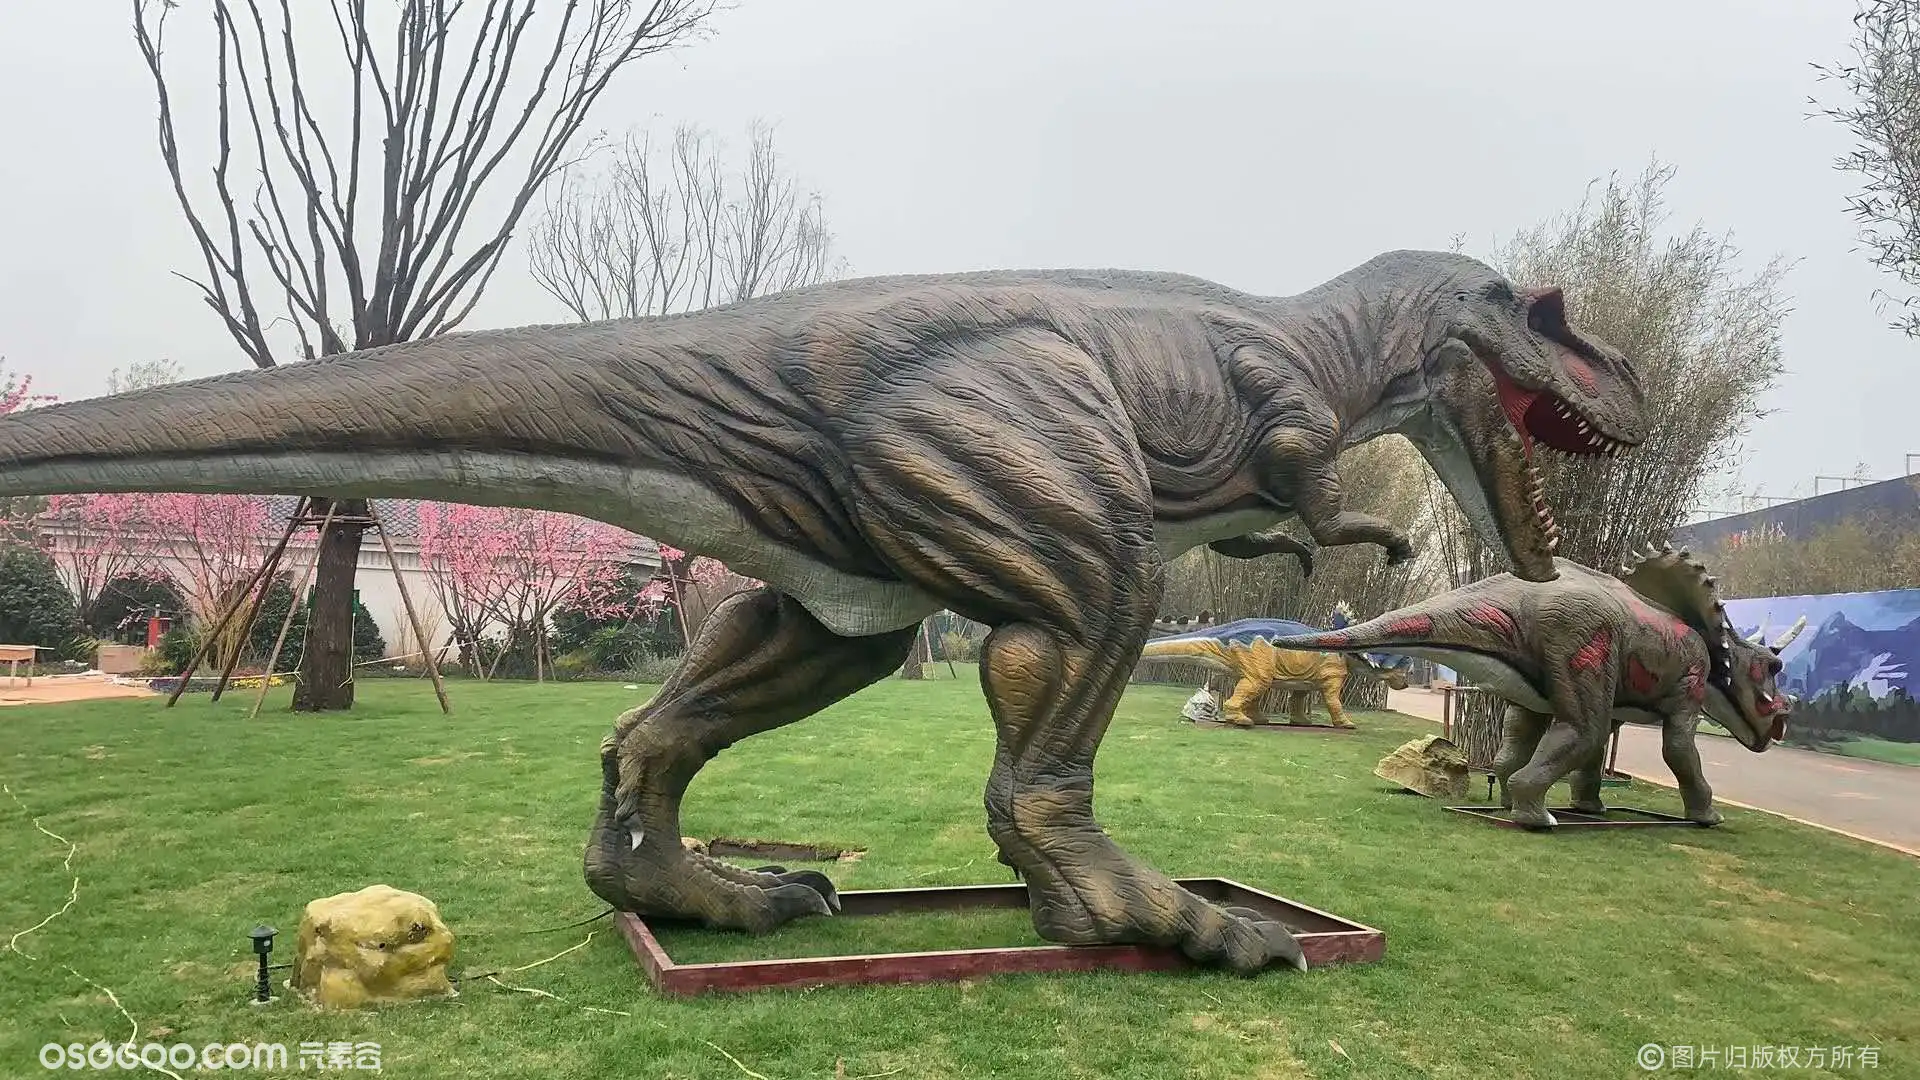 大型仿真侏罗纪时代恐龙展承接各种展览活动道具租赁